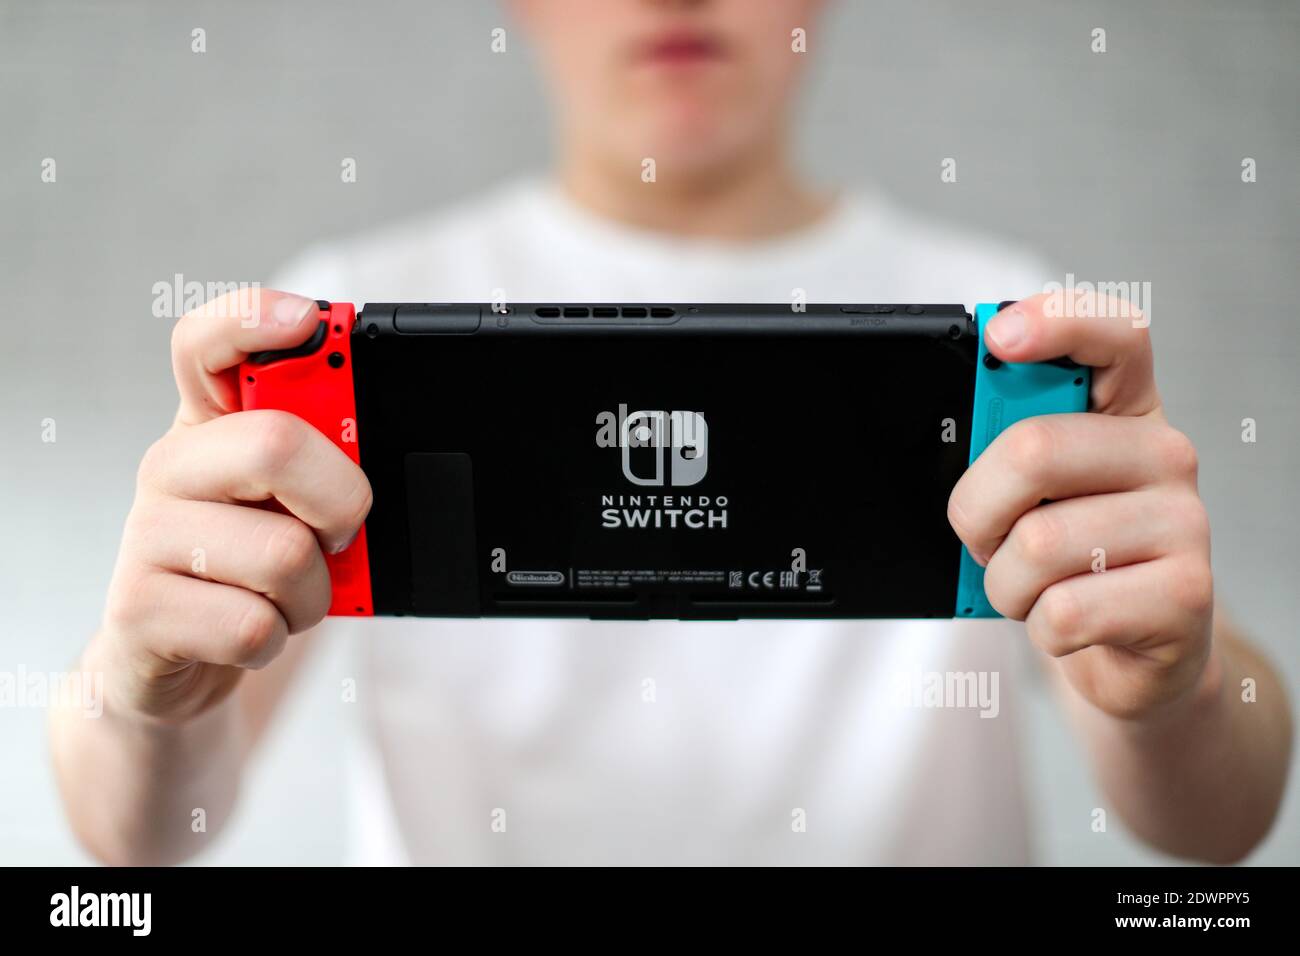 Un adolescent jouant sur une console de jeux Nintendo Switch Banque D'Images